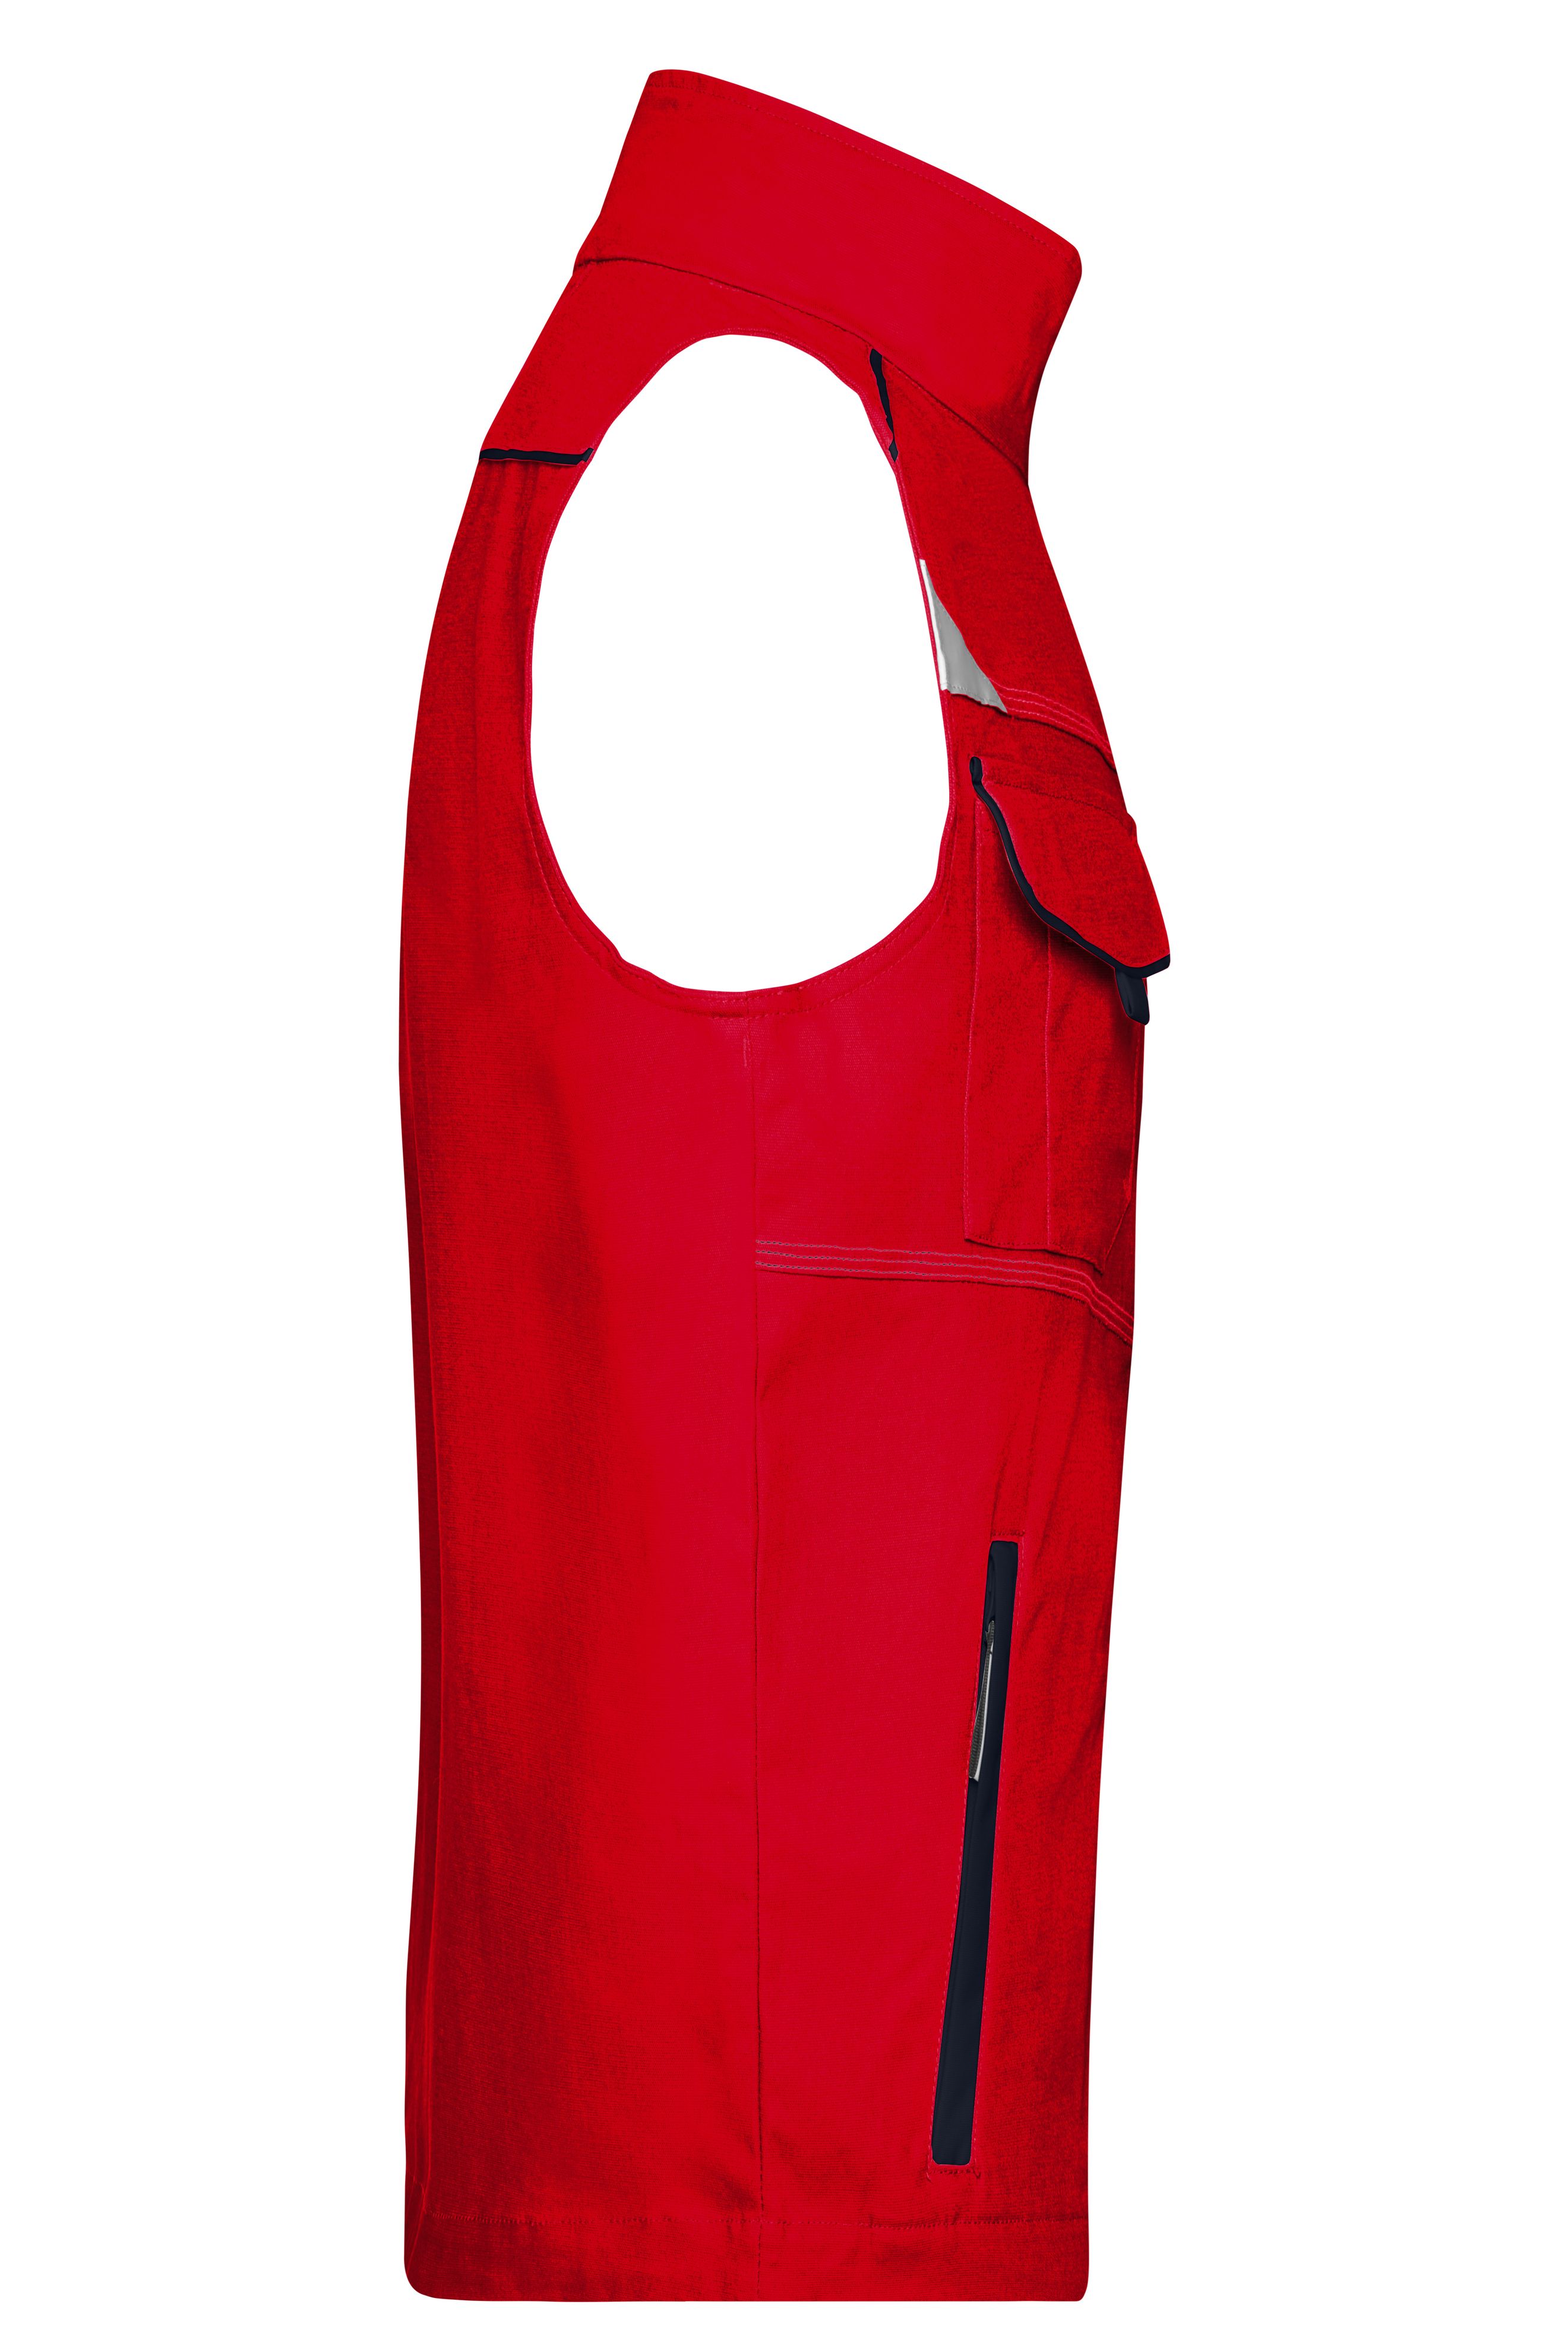 Workwear Vest - COLOR - JN850 Funktionelle Weste im sportlichen Look mit hochwertigen Details